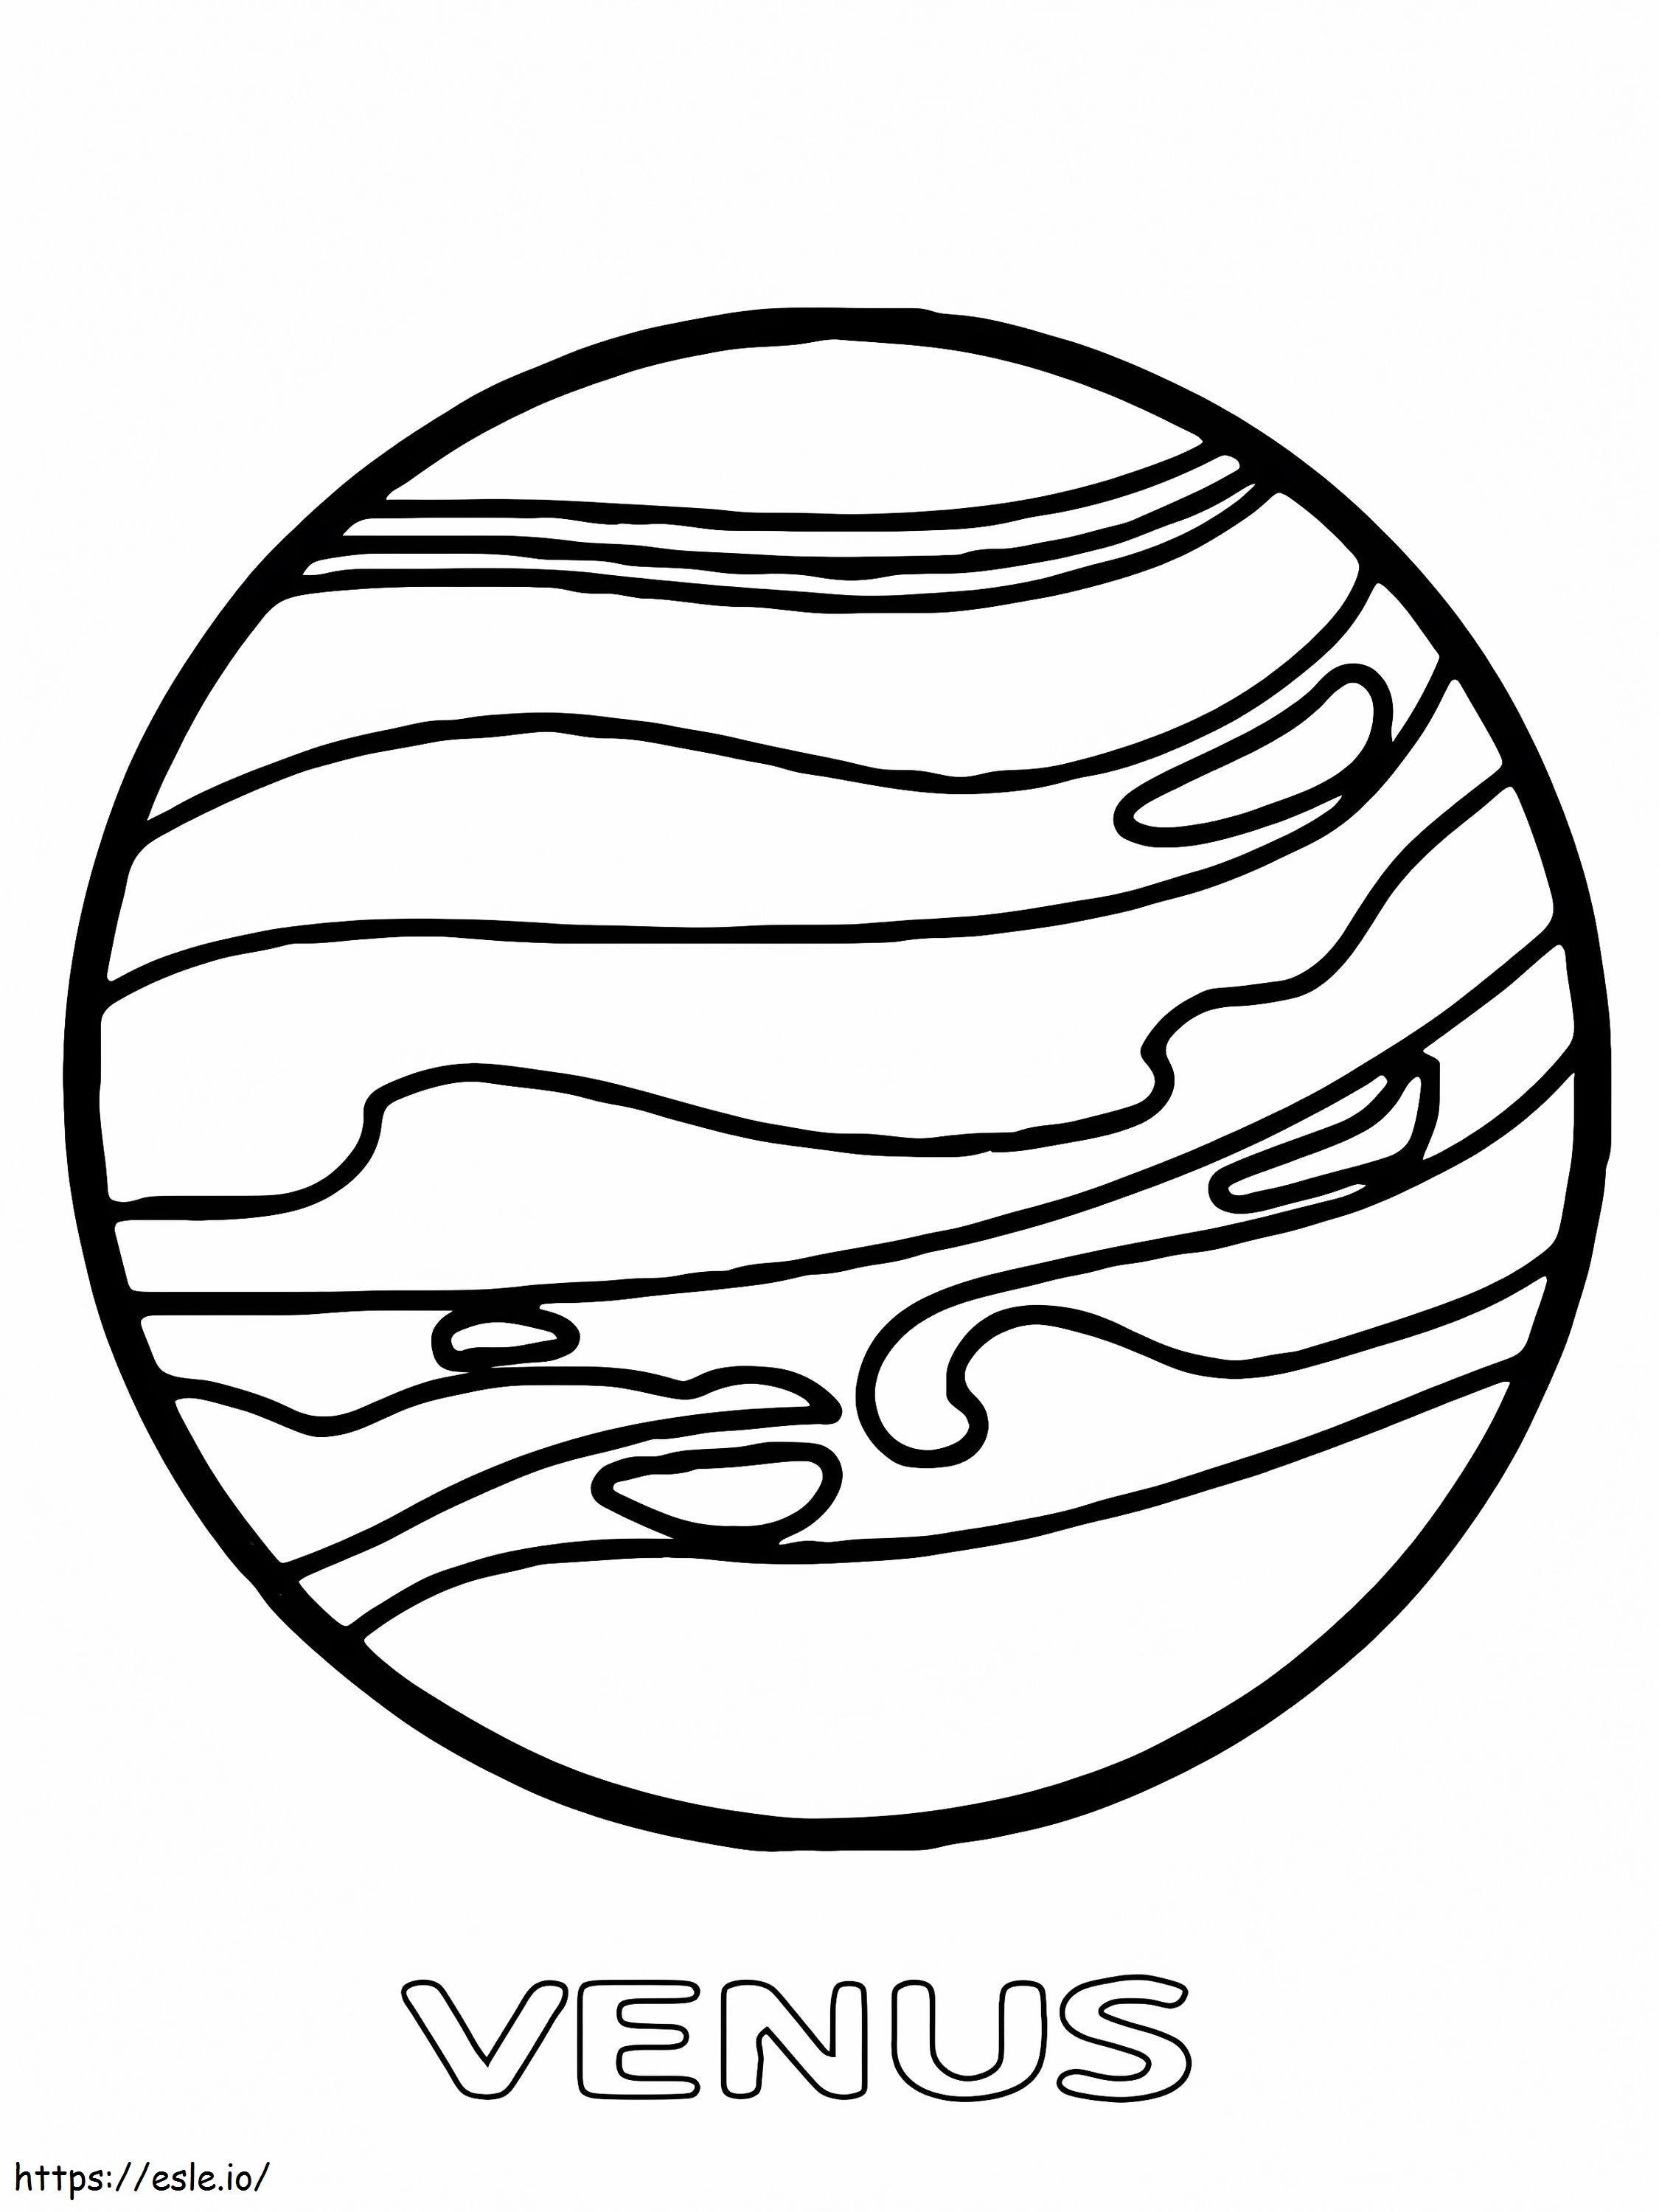 Planet Venus coloring page